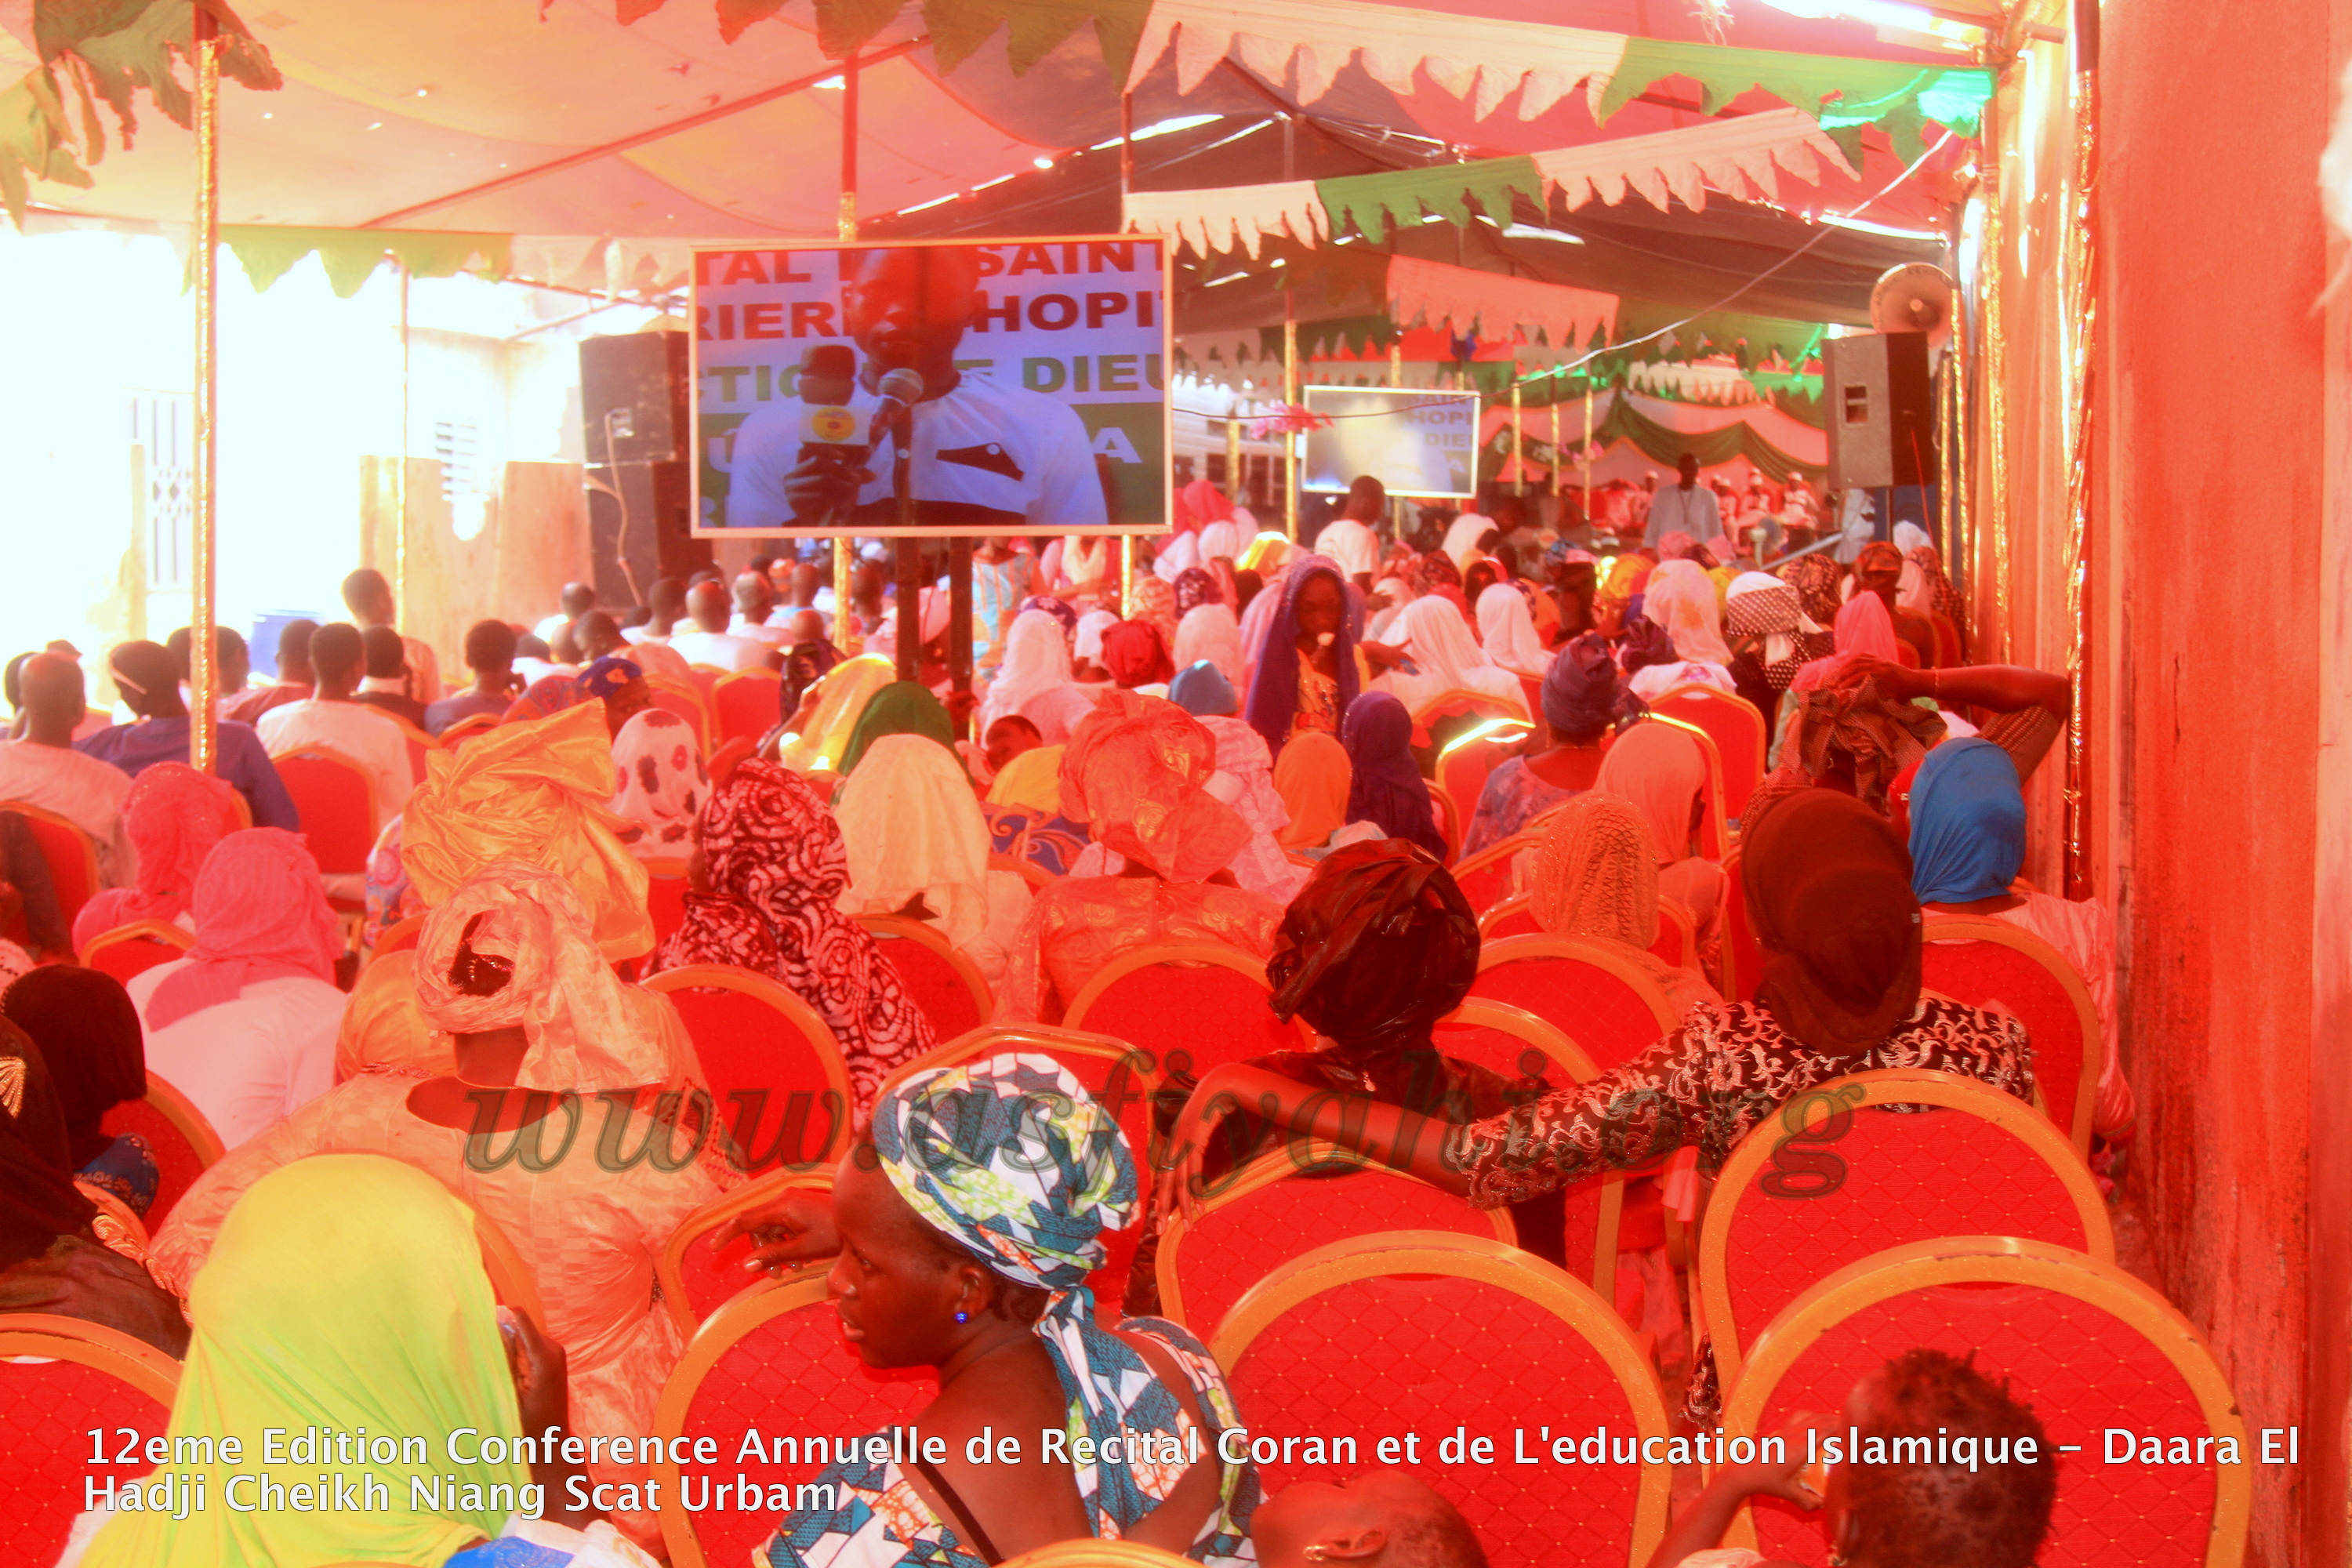 PHOTOS - Les Images de la Conférence annuelle de Récital du Saint Coran du Daara El Hadj Cheikh Niang de Scat urbam